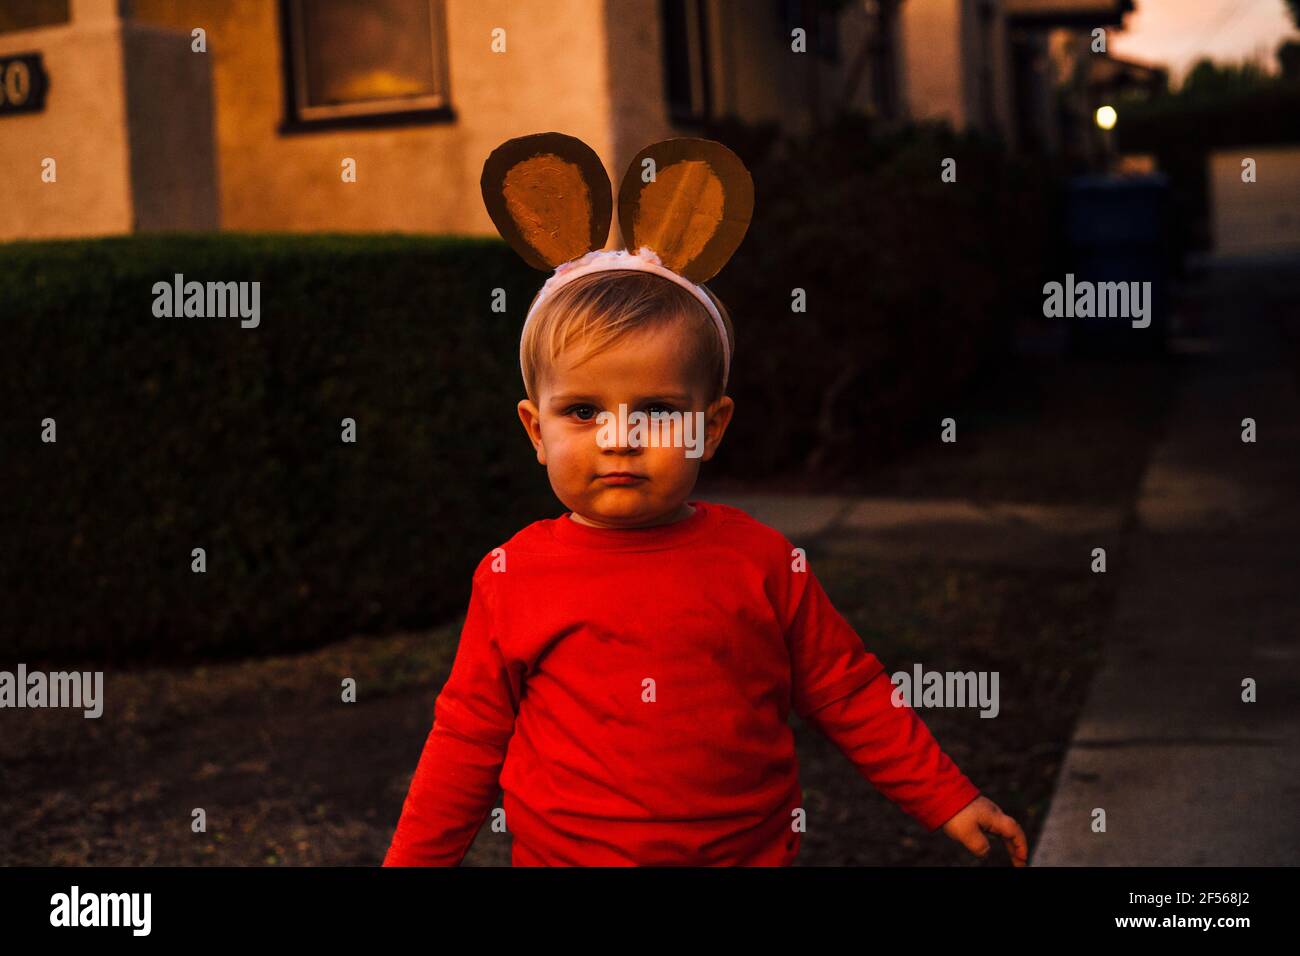 Portrait of cute little boy wearing monkey ears headband standing outdoors at dusk Stock Photo